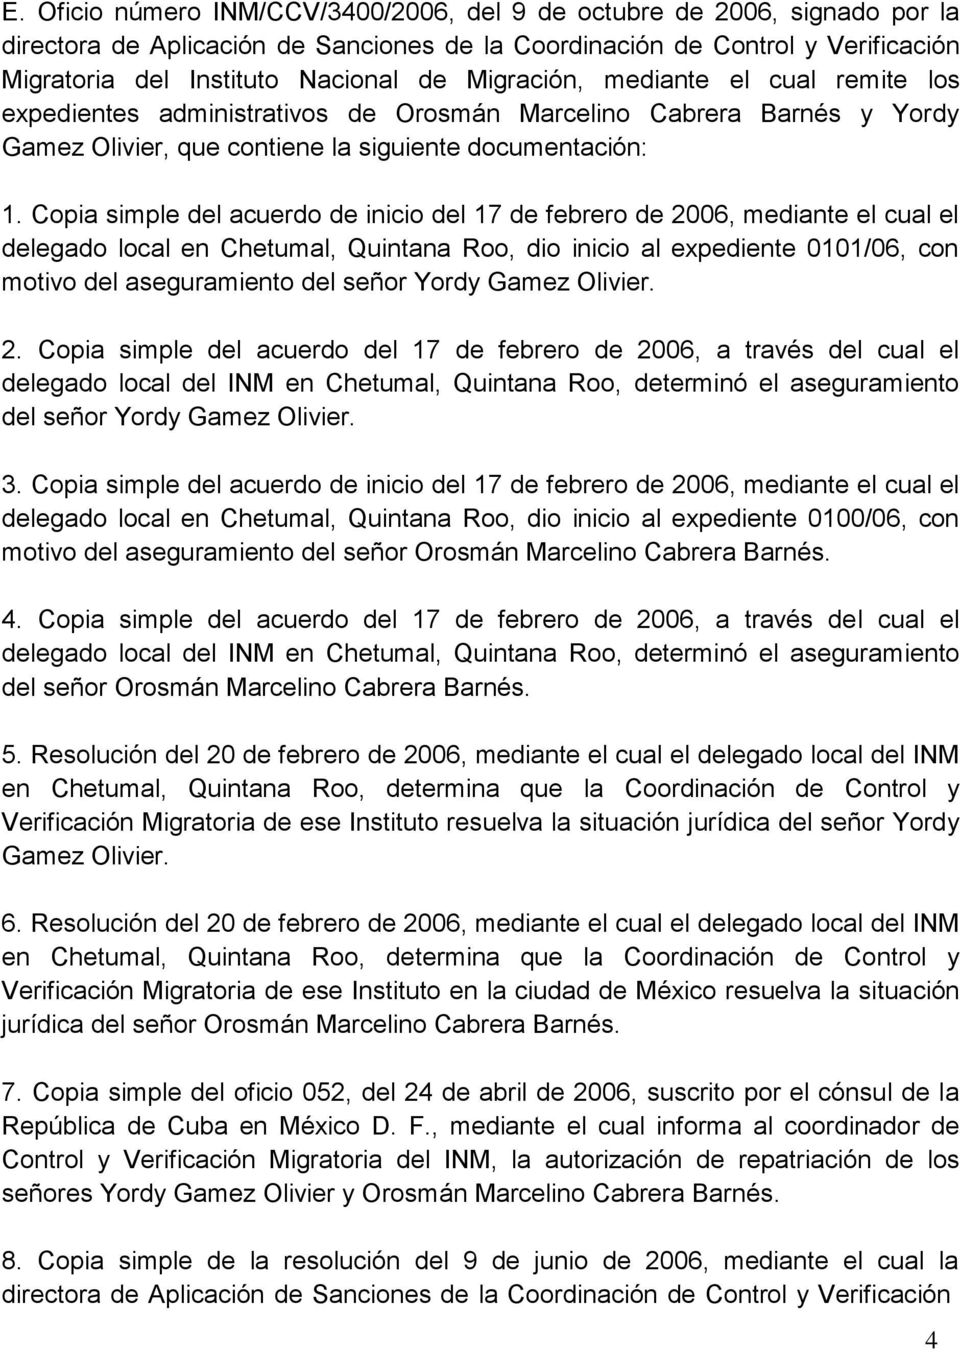 Copia simple del acuerdo de inicio del 17 de febrero de 2006, mediante el cual el delegado local en Chetumal, Quintana Roo, dio inicio al expediente 0101/06, con motivo del aseguramiento del señor